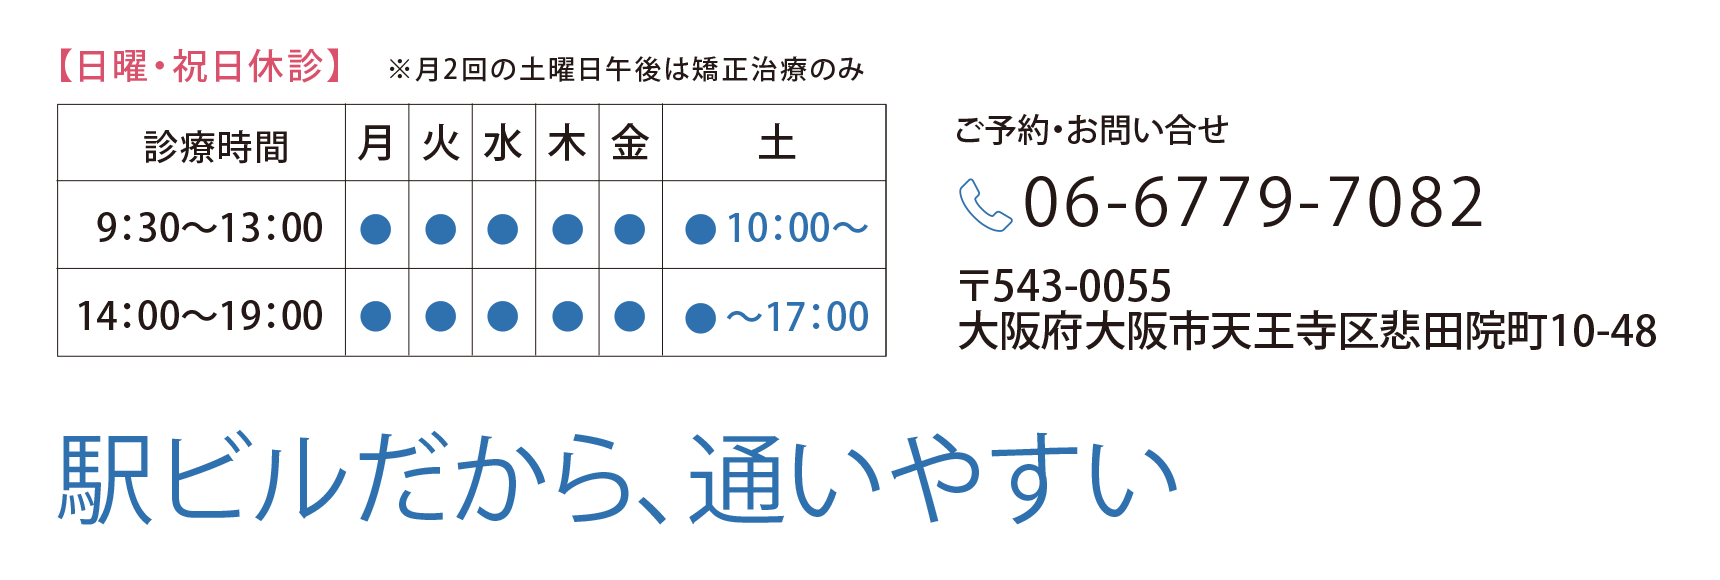 駅ビルだから、通いやすい。大阪府大阪市天王寺区悲田院町10-39、ご予約は06-6770-1182まで。